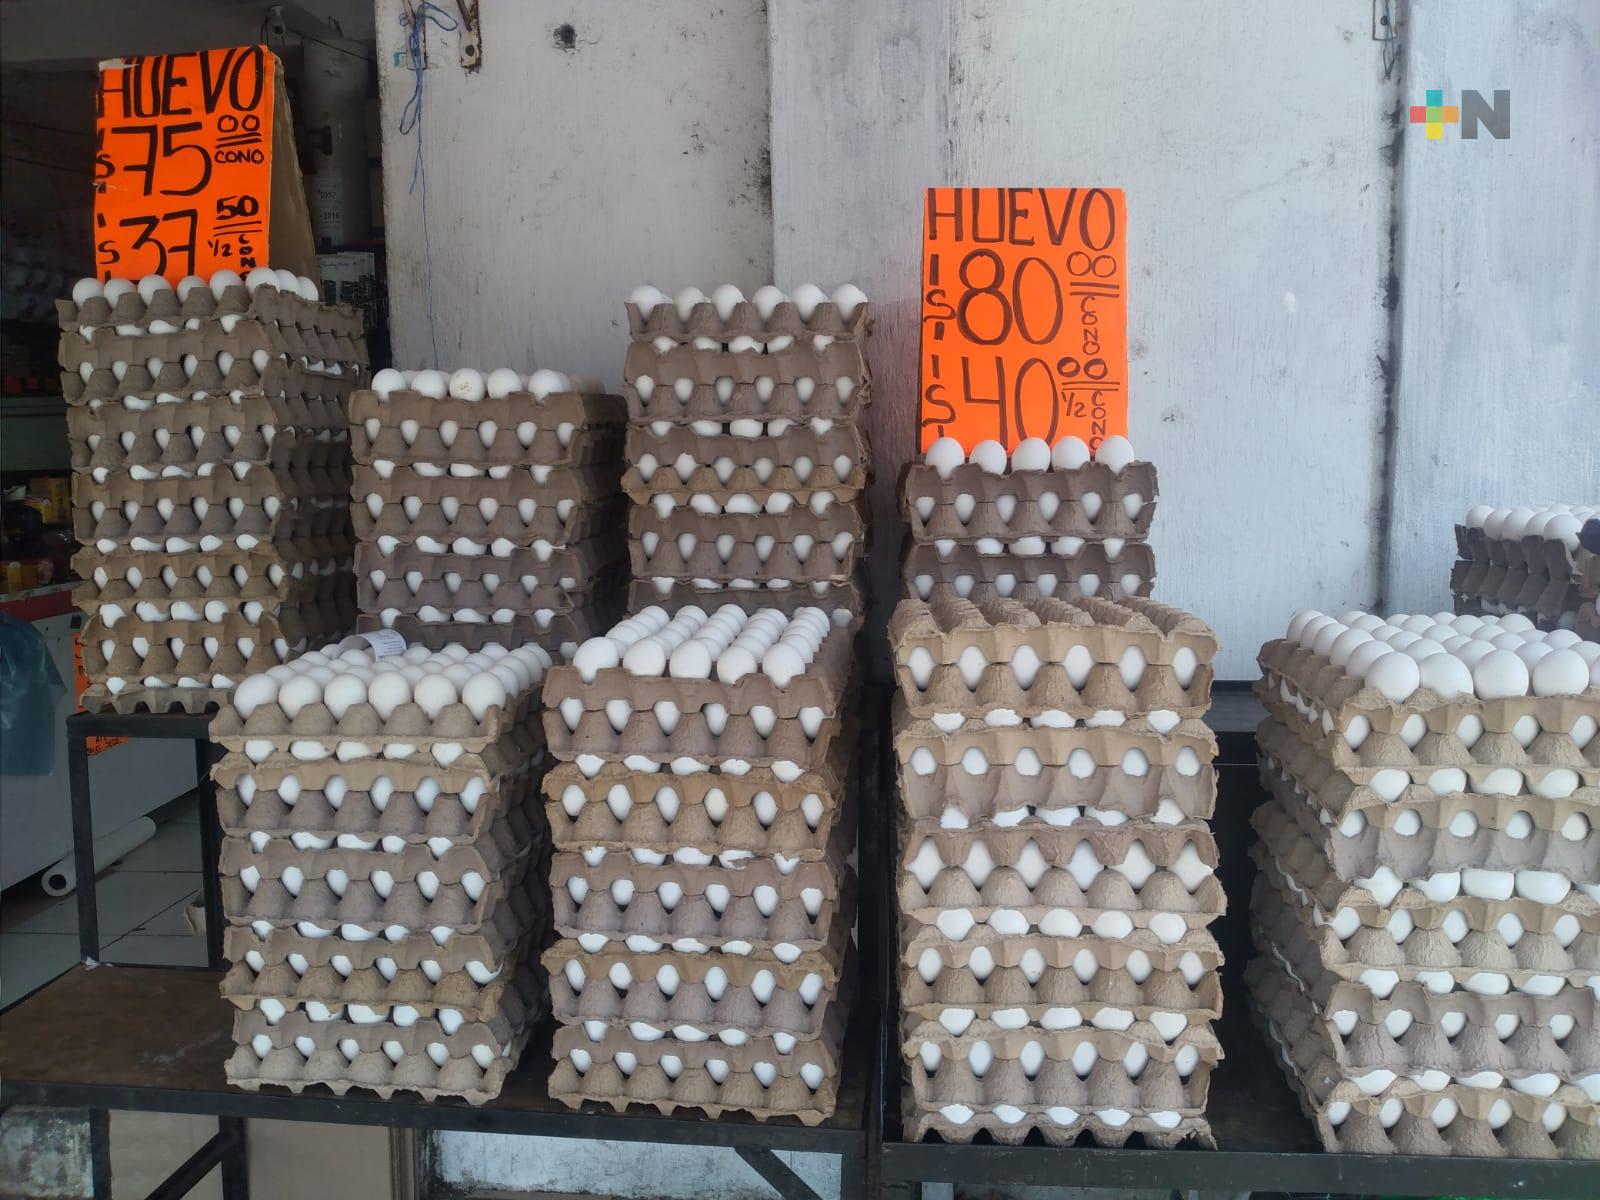 Cono de huevo se vende hasta en 80 pesos en mercado de Veracruz